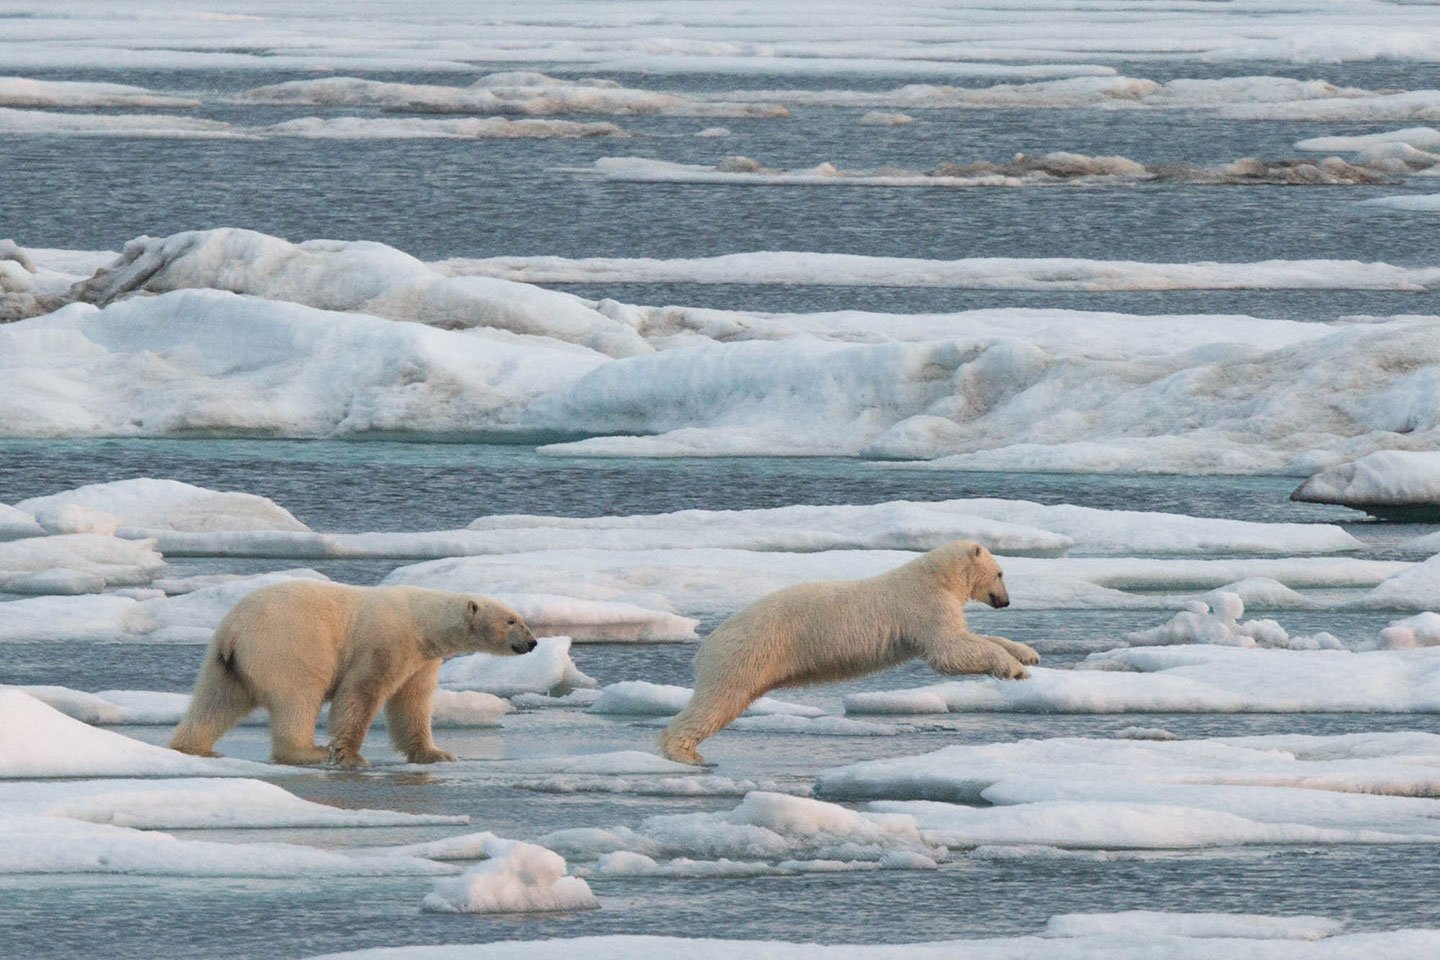 Polar bears live on the ice edge